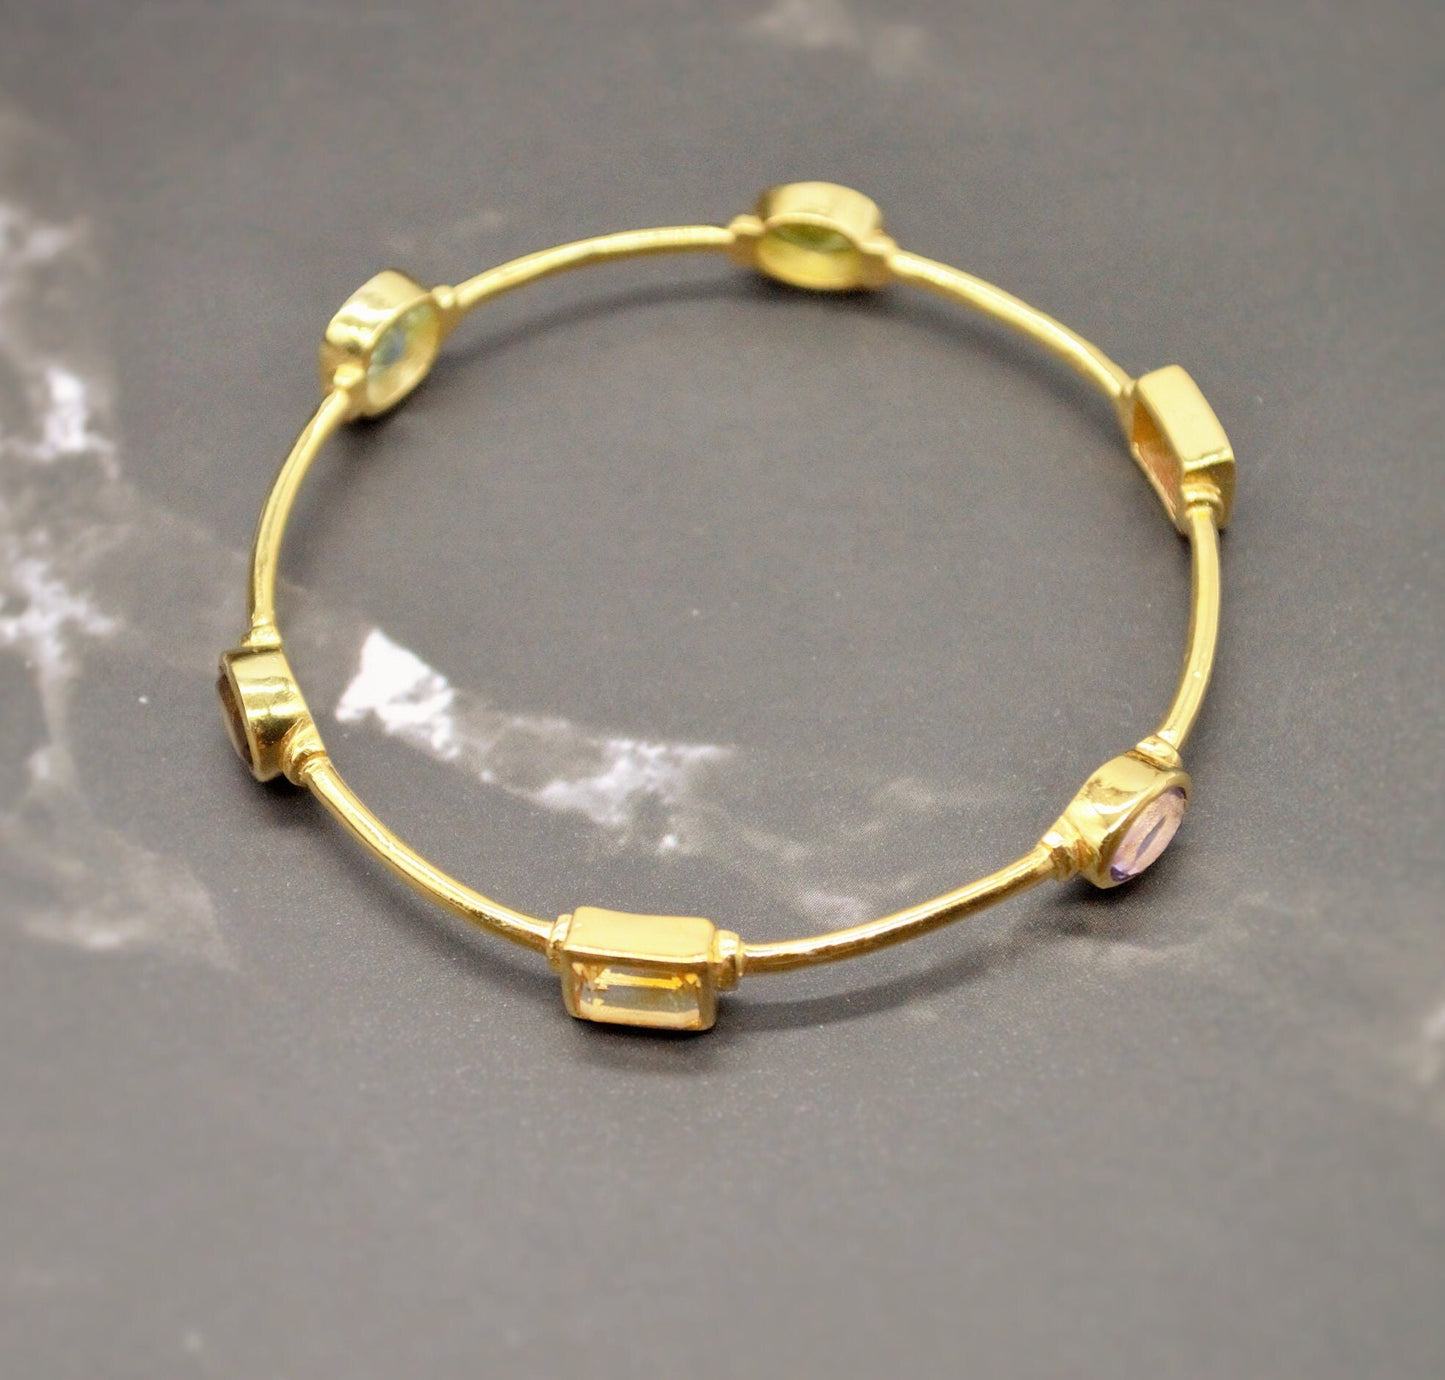 Multi Coloured Stone Gold Bangle, Blue Topaz, Amethyst, Citrine Bracelet, 6cm diameter, Gift For Her, Sterling Silver Birthstone Bracelet